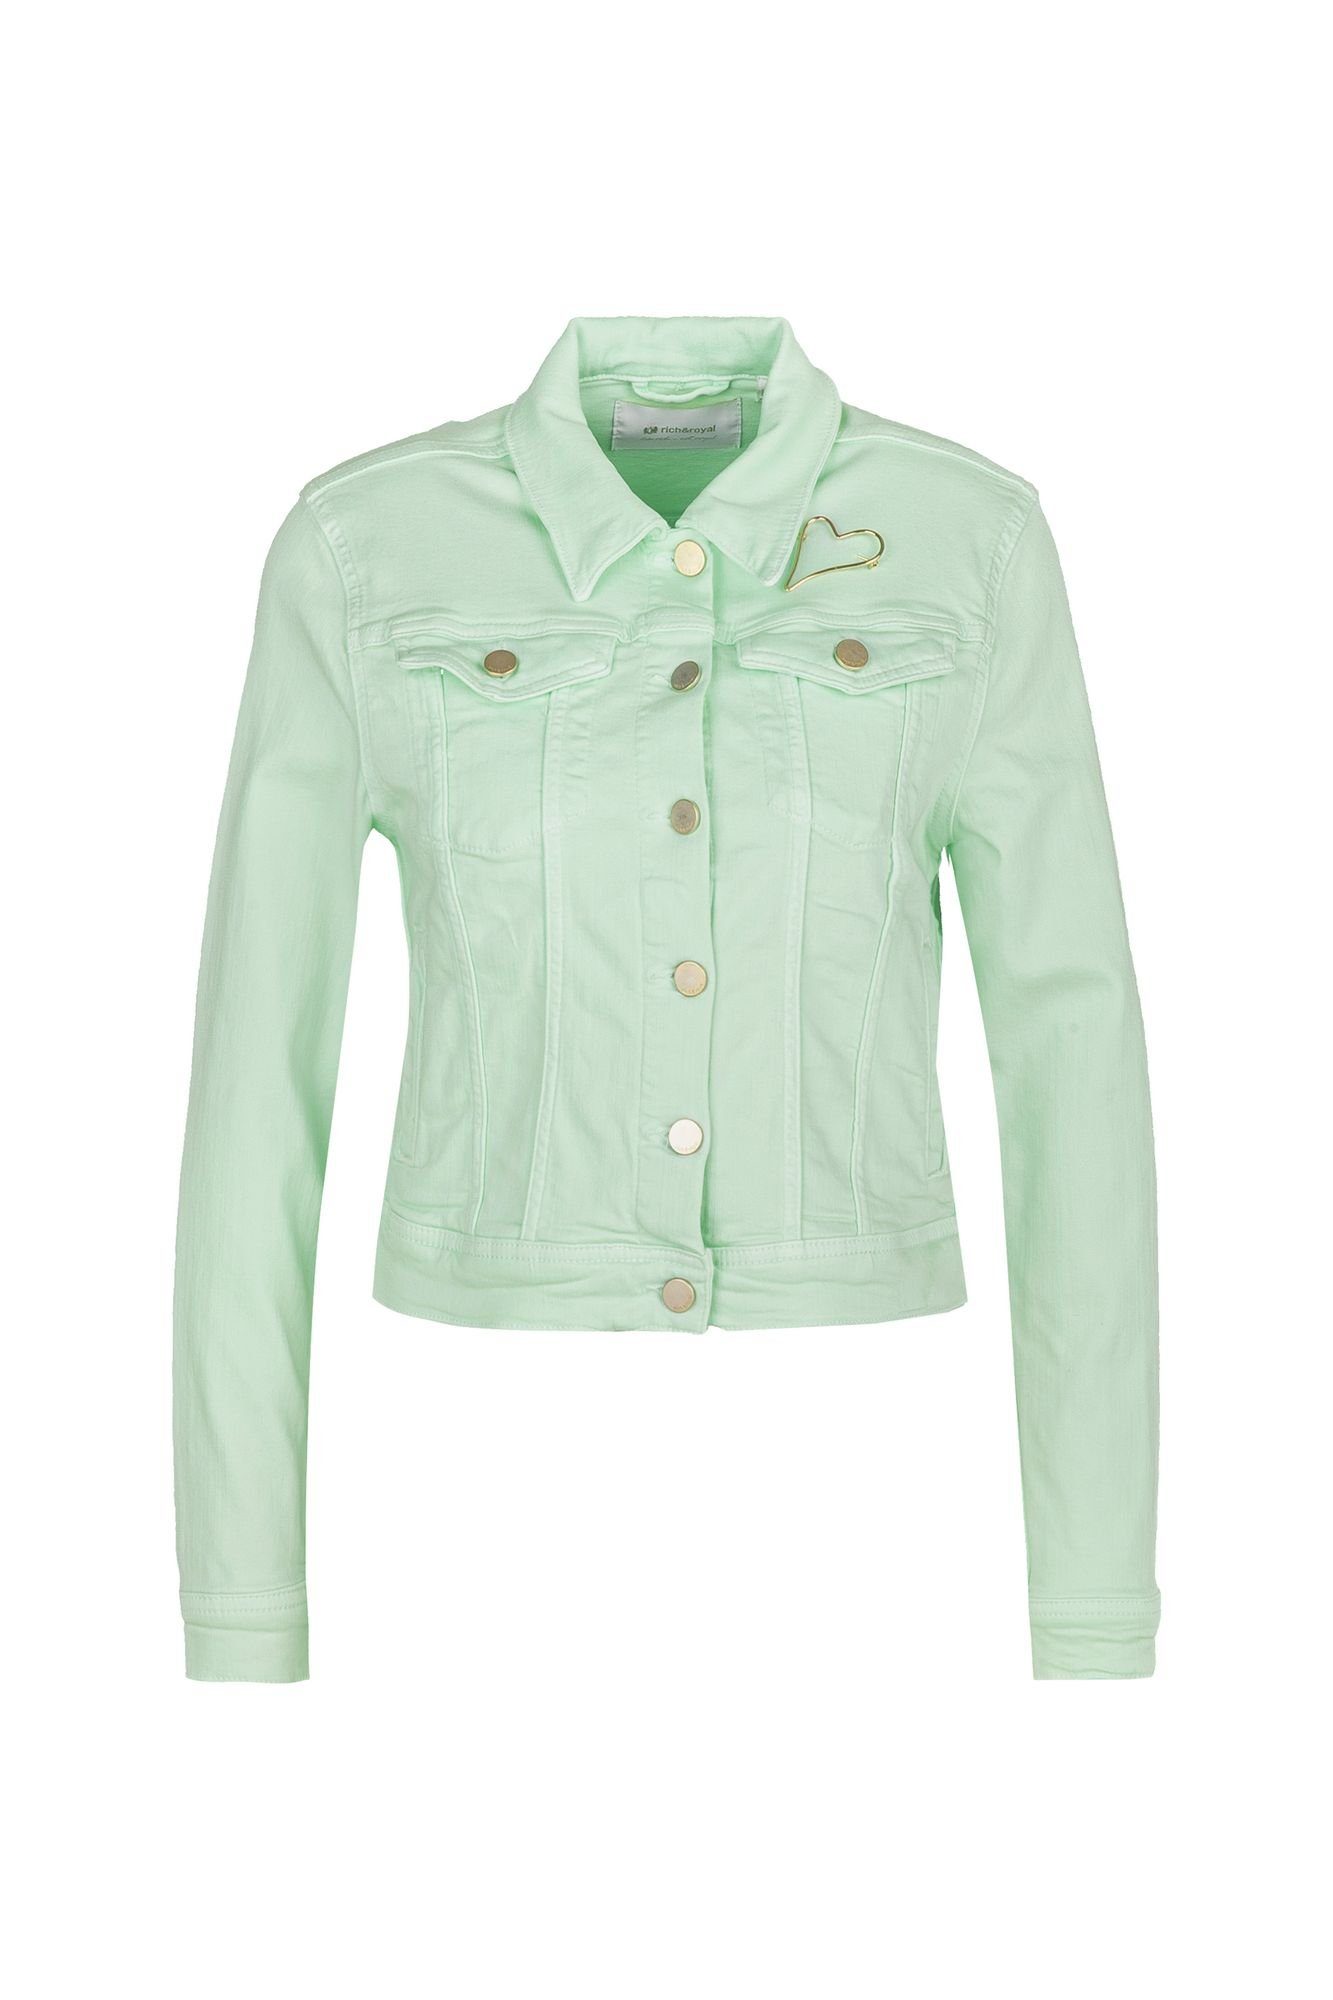 Jeansjacke in grün online kaufen | OTTO